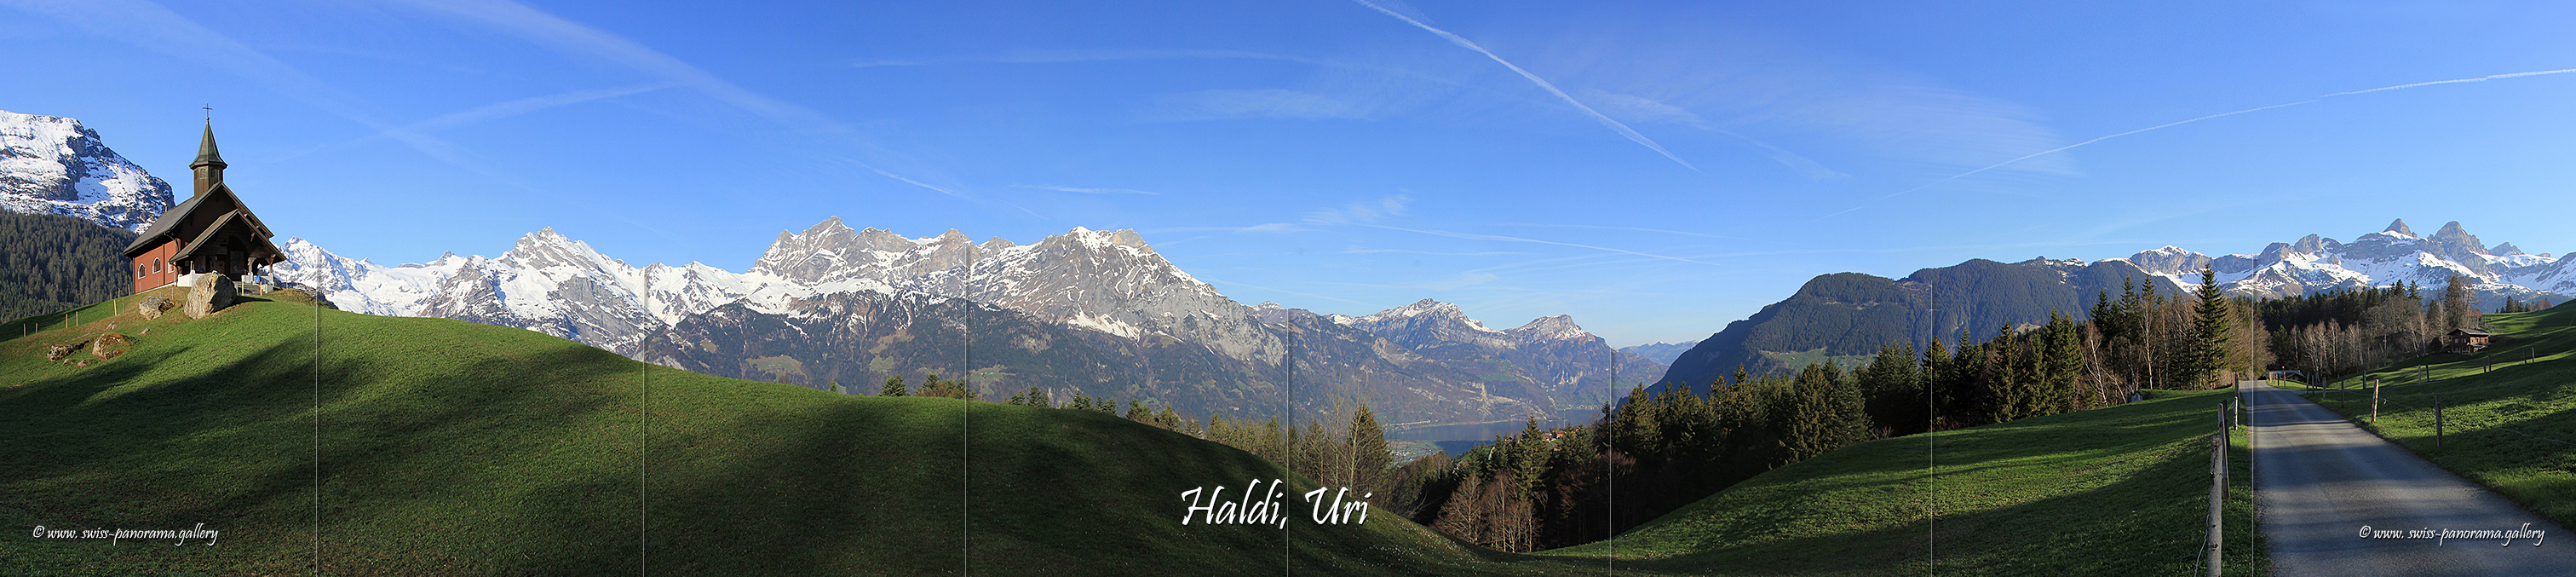 Switzerland panorama Haldi